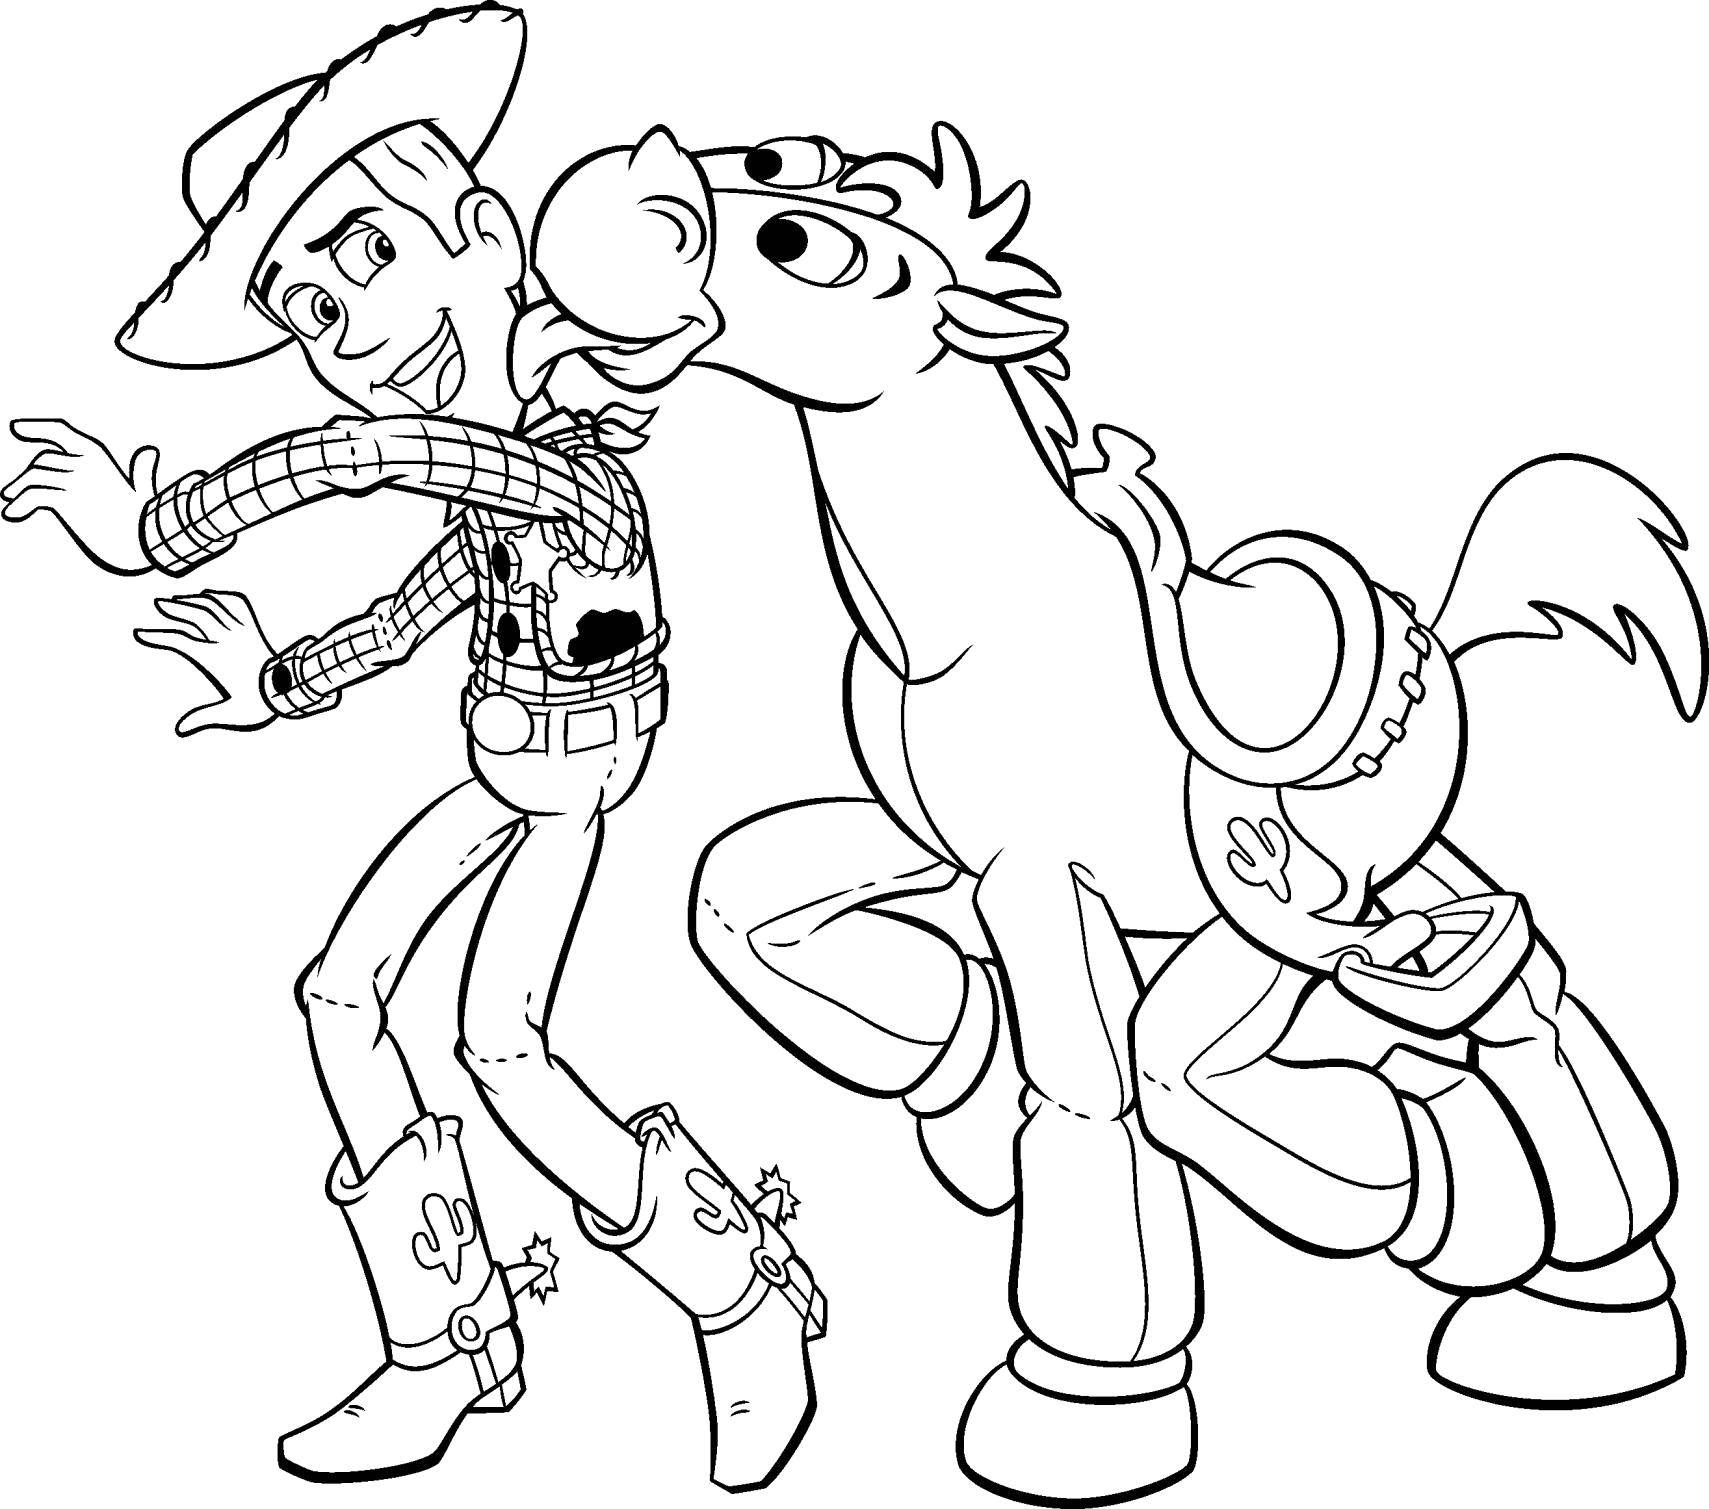 Опис: розмальовки  Шериф вуді з конем. Категорія: Діснеївські розмальовки. Теги:  Персонаж з мультфільму, Історія іграшок .